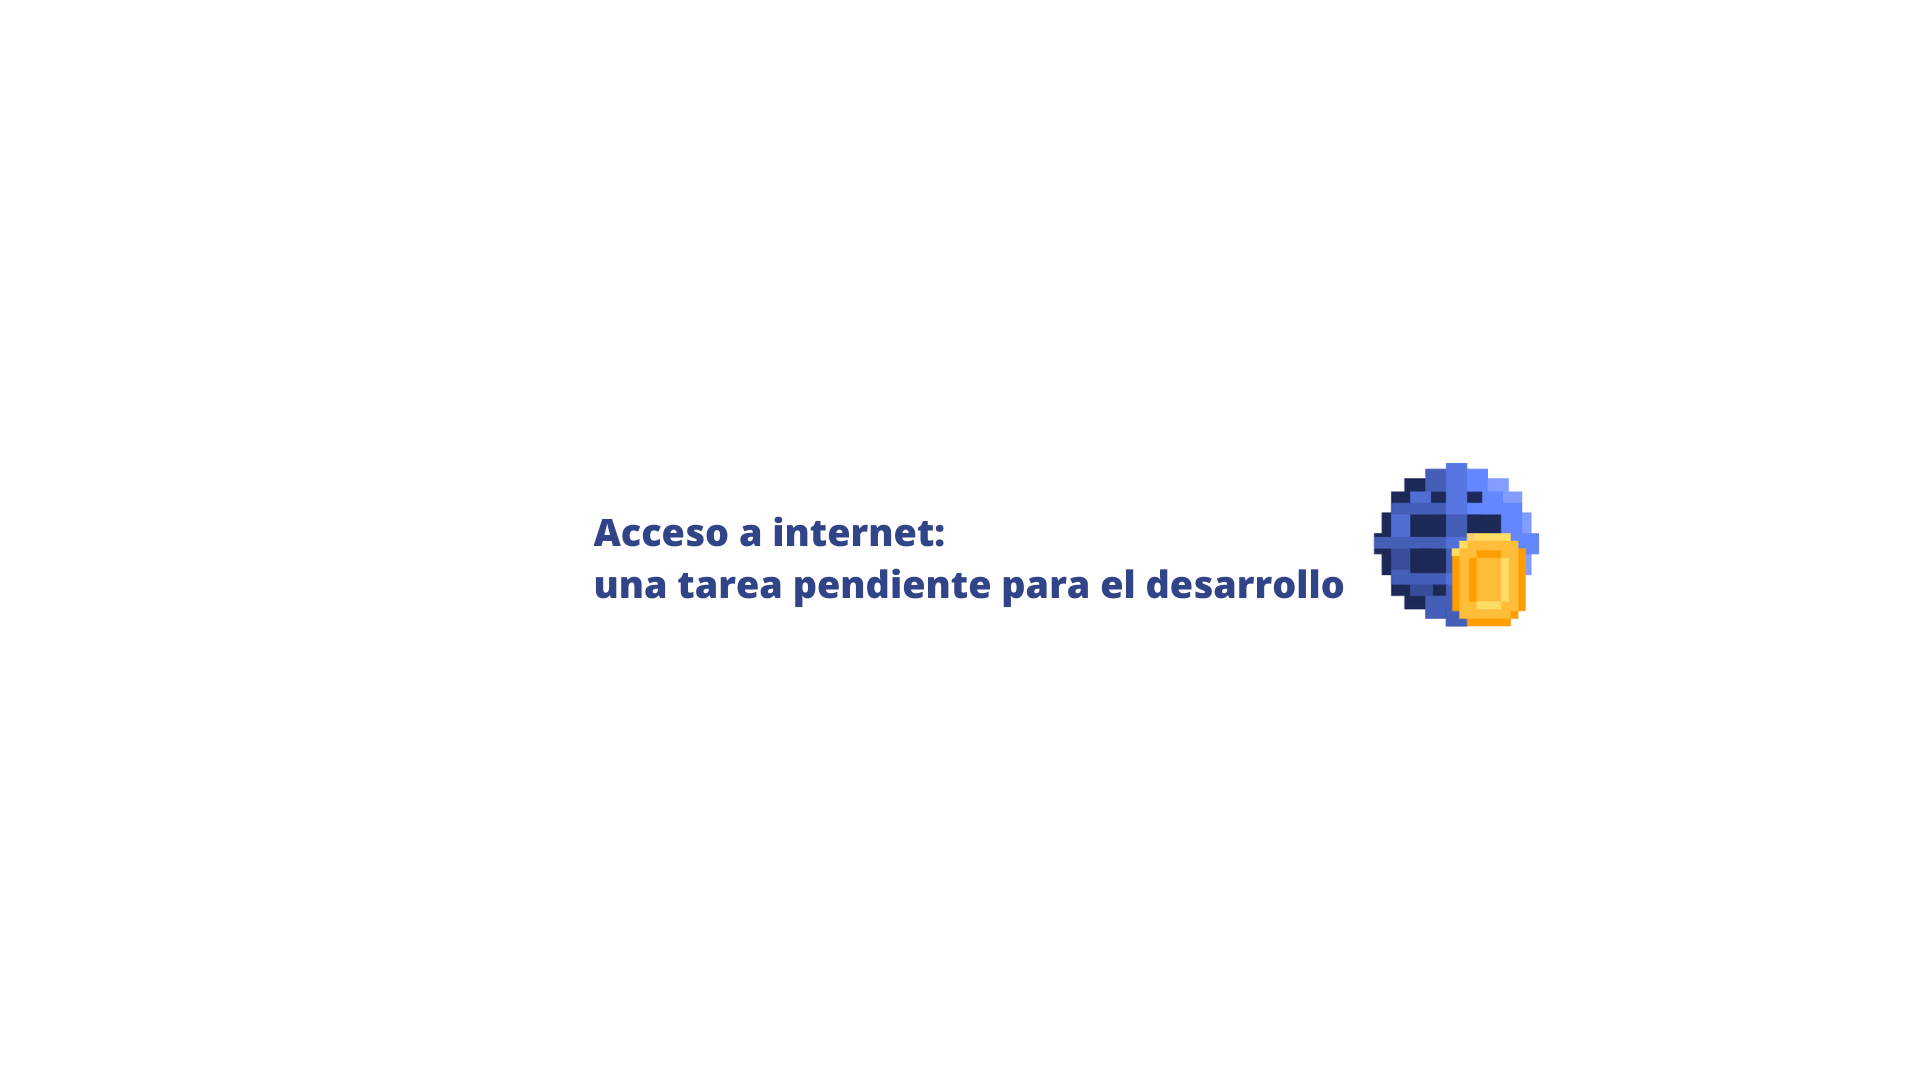 El acceso a internet: una tarea pendiente para el desarrollo del país